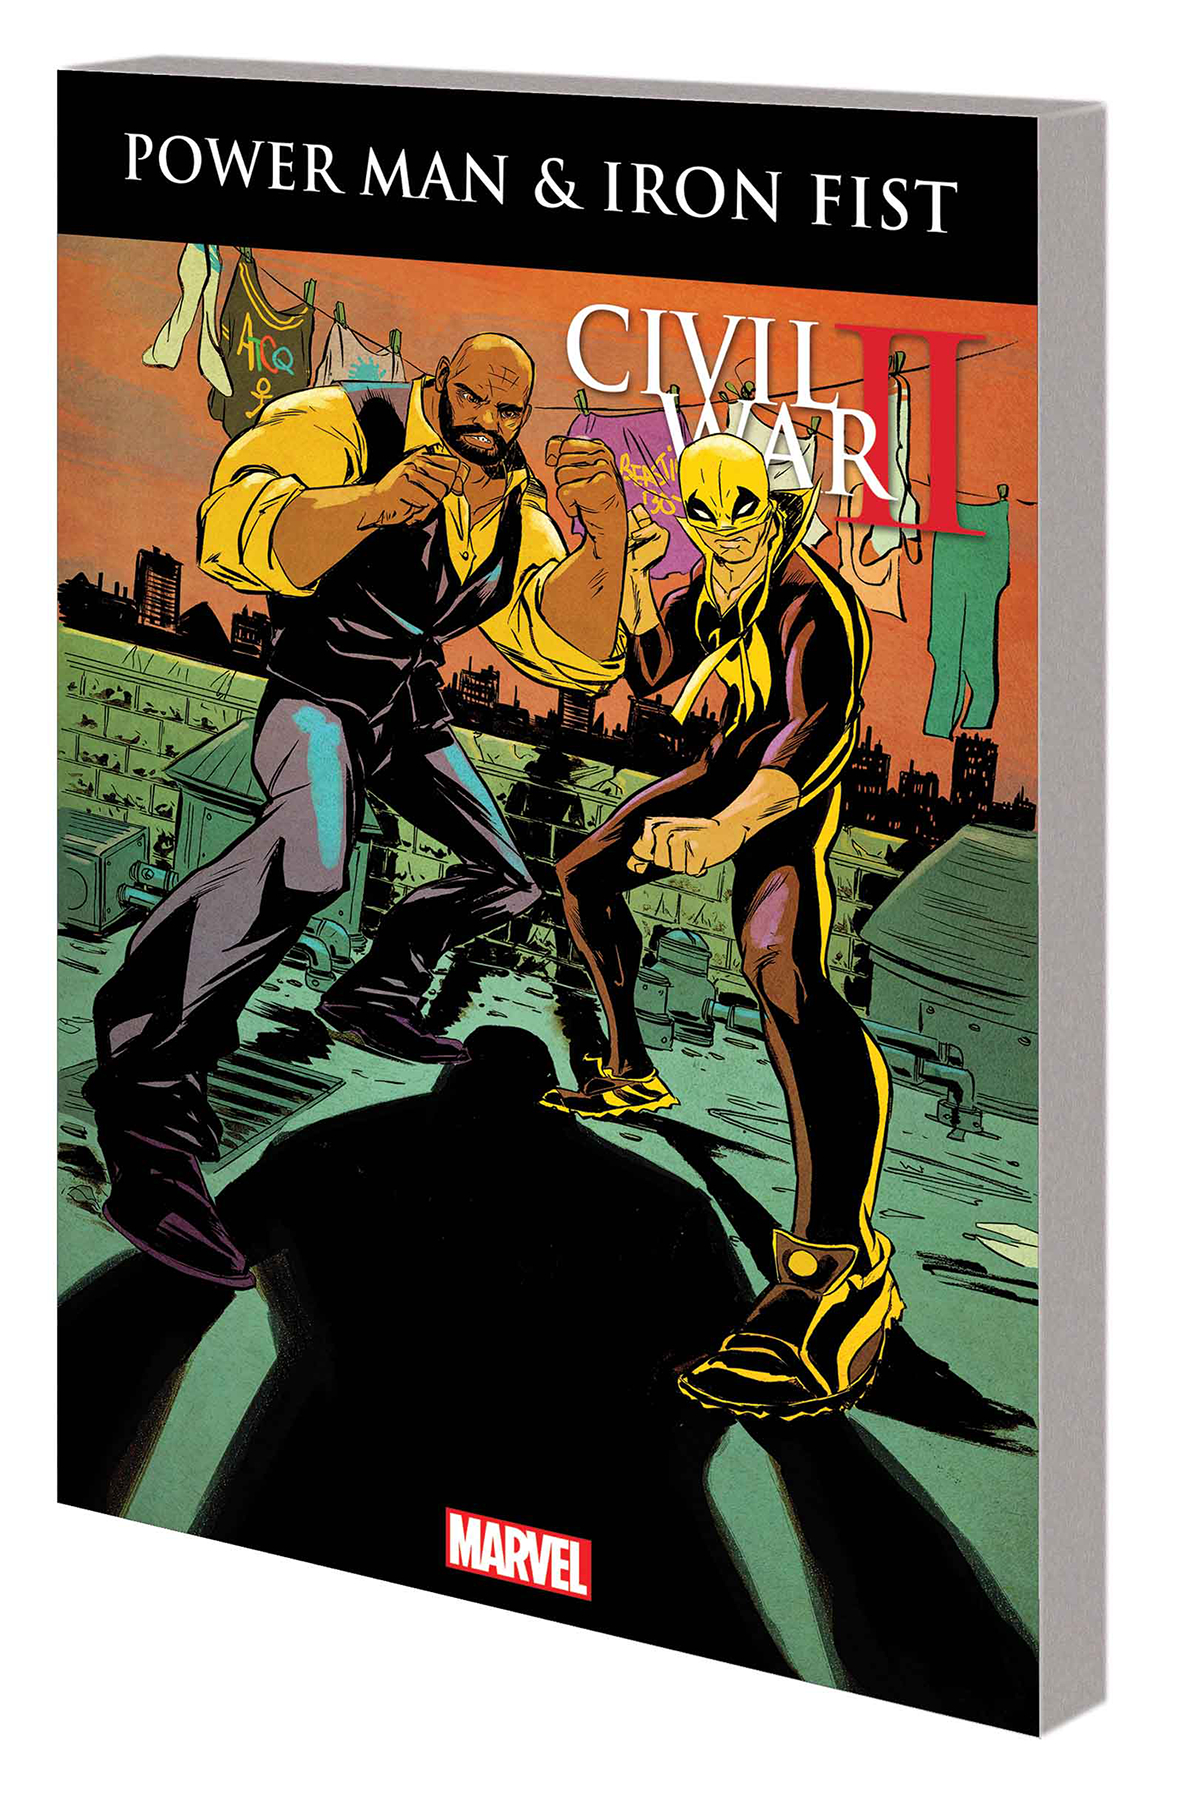 Power Man and Iron Fist: Volume 2: Civil War II TP